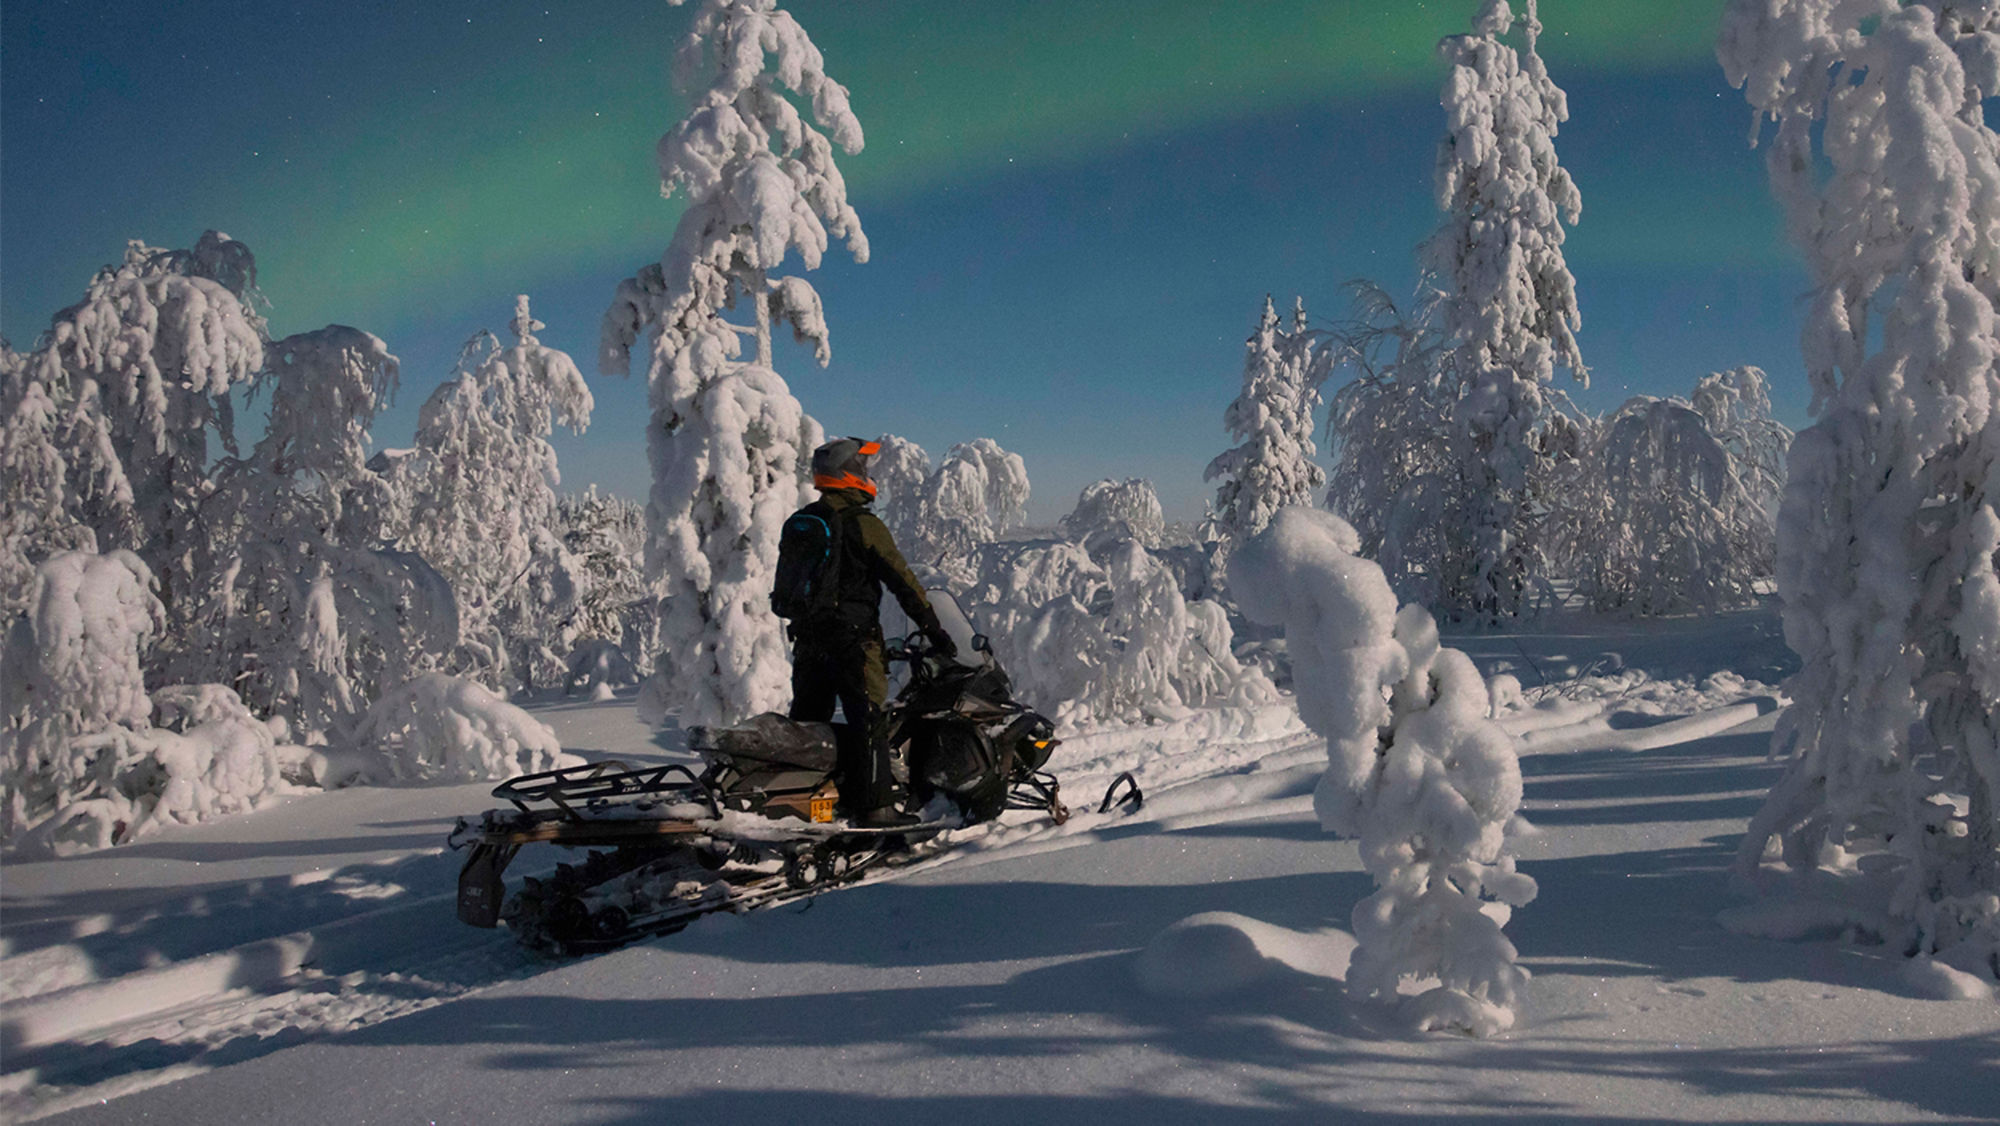 Føreren beundrer nordlyset i en mørk skog på en Lynx 49 Ranger ST snøscooter.